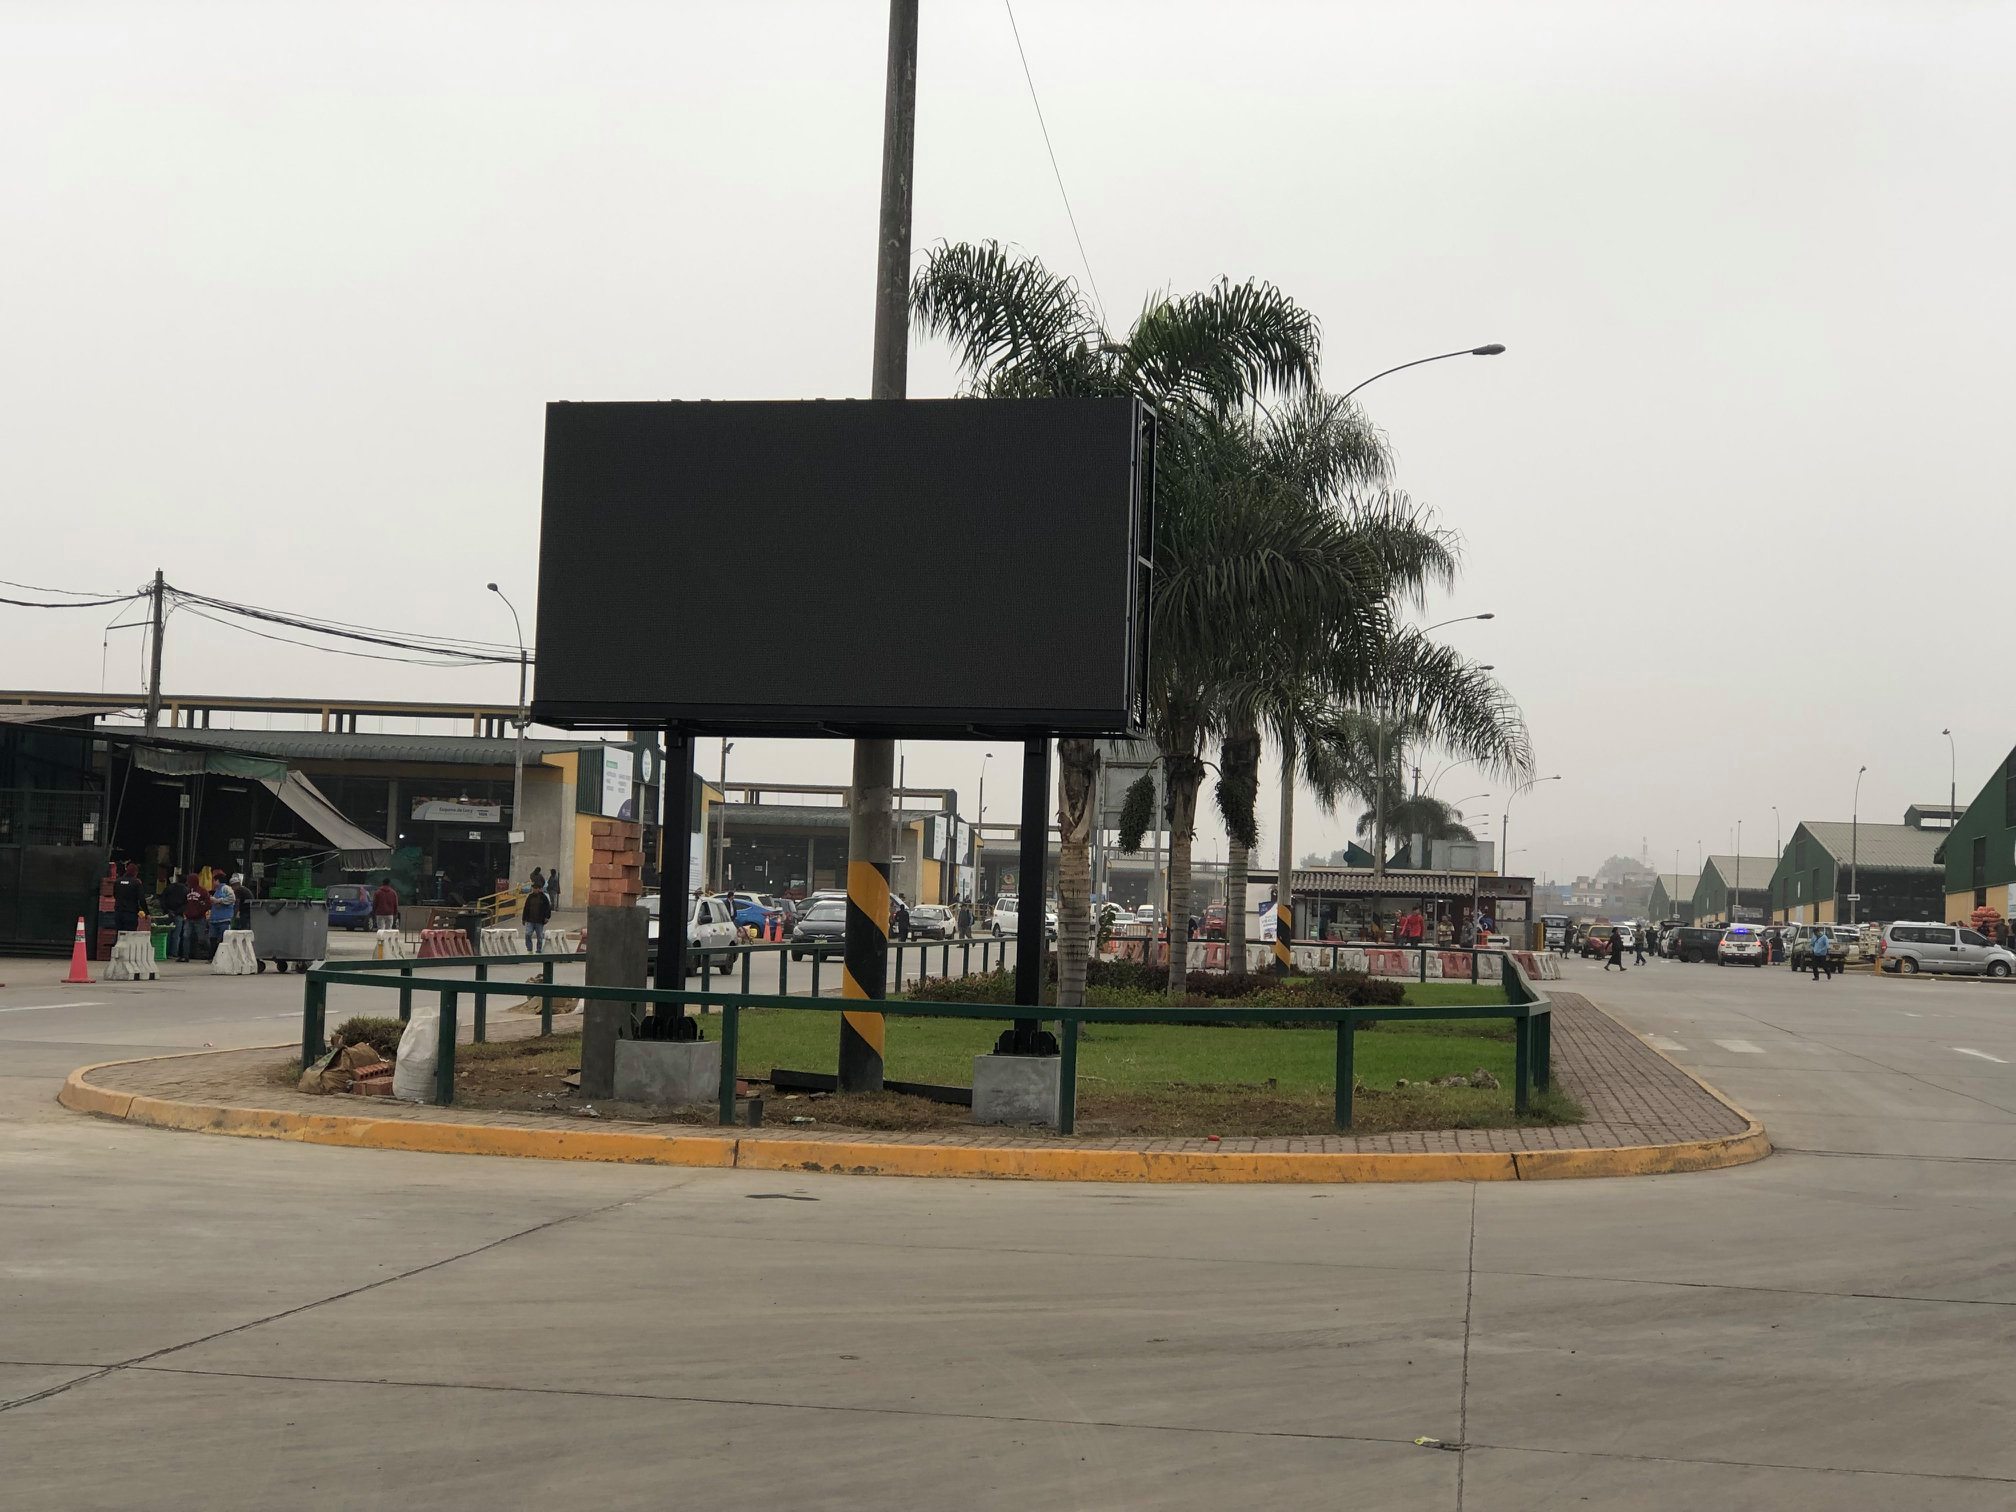 ¡EMMSA moderna! El Gran Mercado Mayorista de Lima se mantiene a la vanguardia de la tecnología, en breve plazo entrará en funcionamiento una pantalla led,